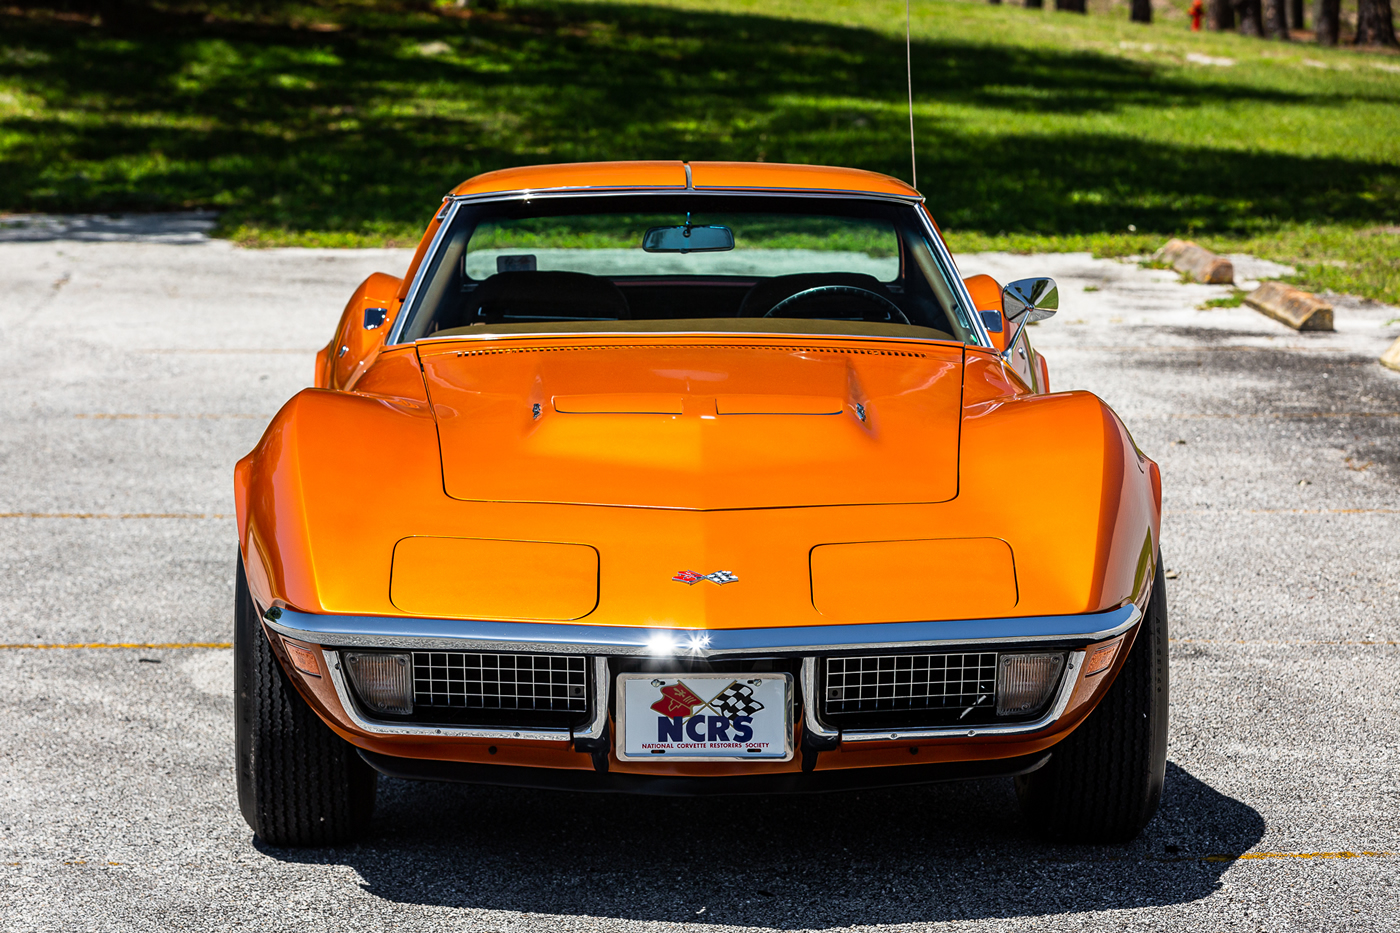 1971 Corvette Coupe LS6 454/425 in Ontario Orange